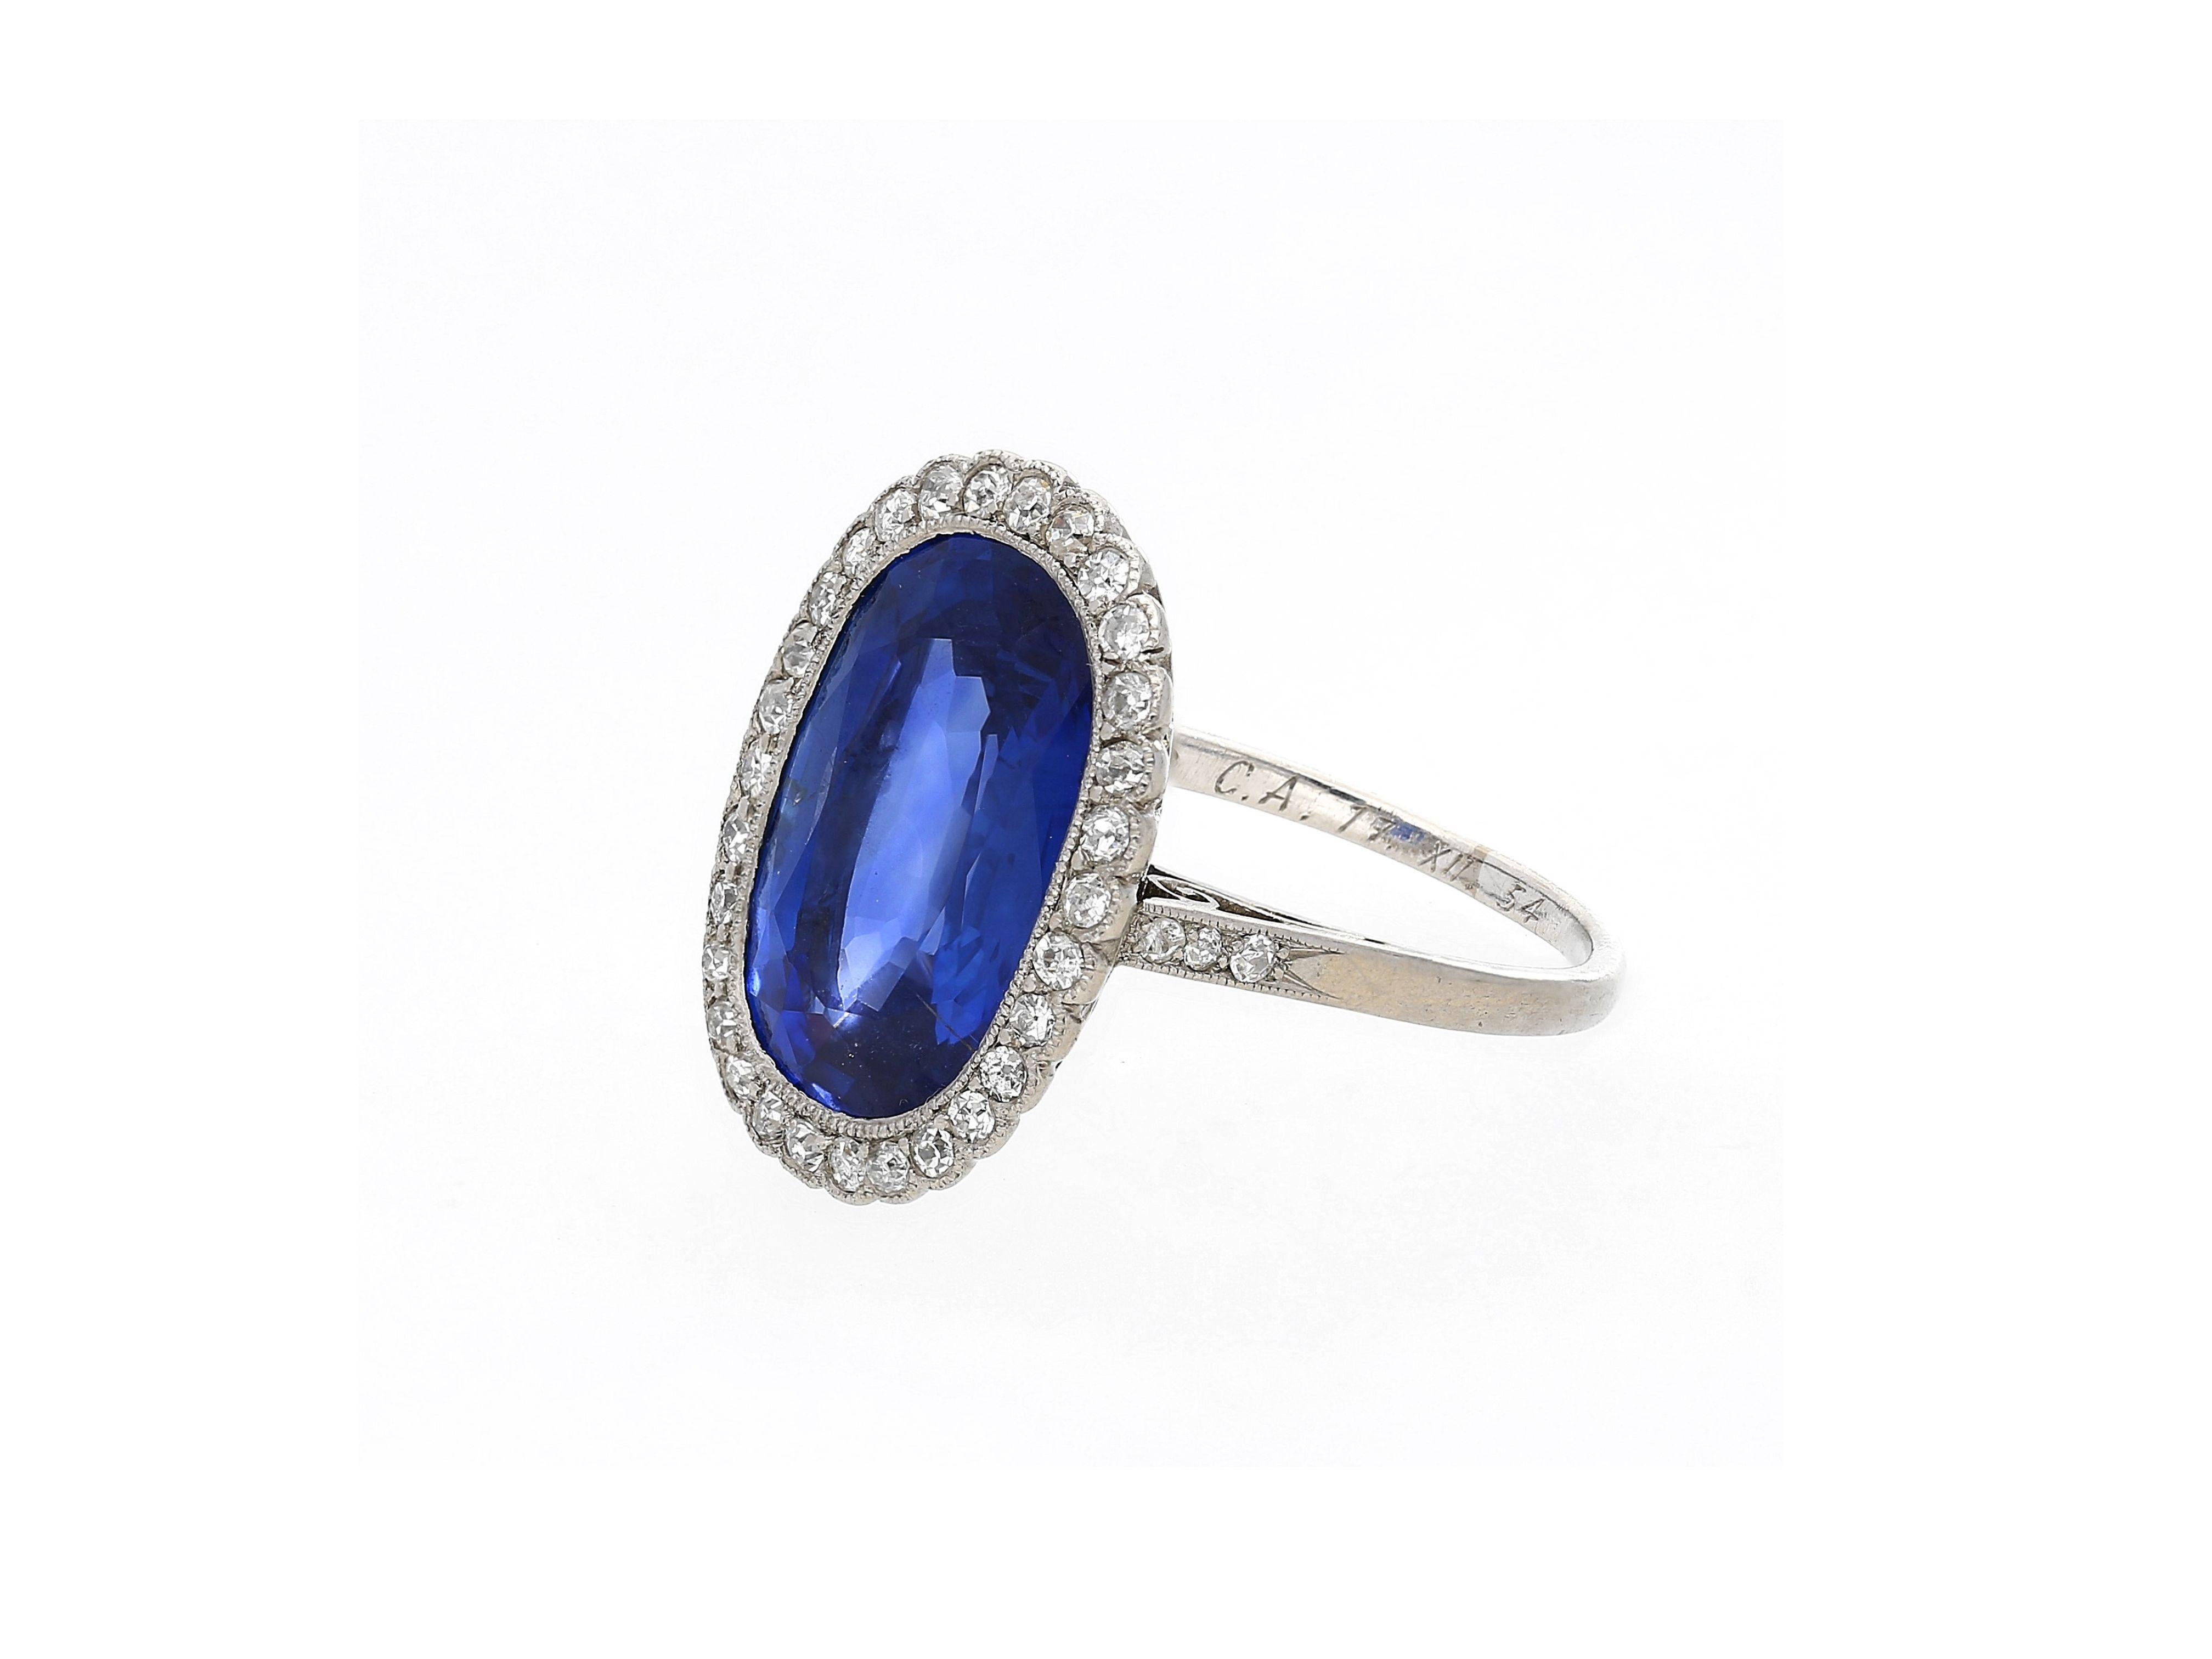 AGL zertifiziert 7,76 Karat natürlichen Burma Cushion Cut Blue Sapphire Ring in Platin. Sie stammen aus der legendären Edwardian-Art Deco-Ära. CIRCA 1915-1935. 

Dieser Ring im Vintage-Stil zeichnet sich durch seine handgefertigten filigranen